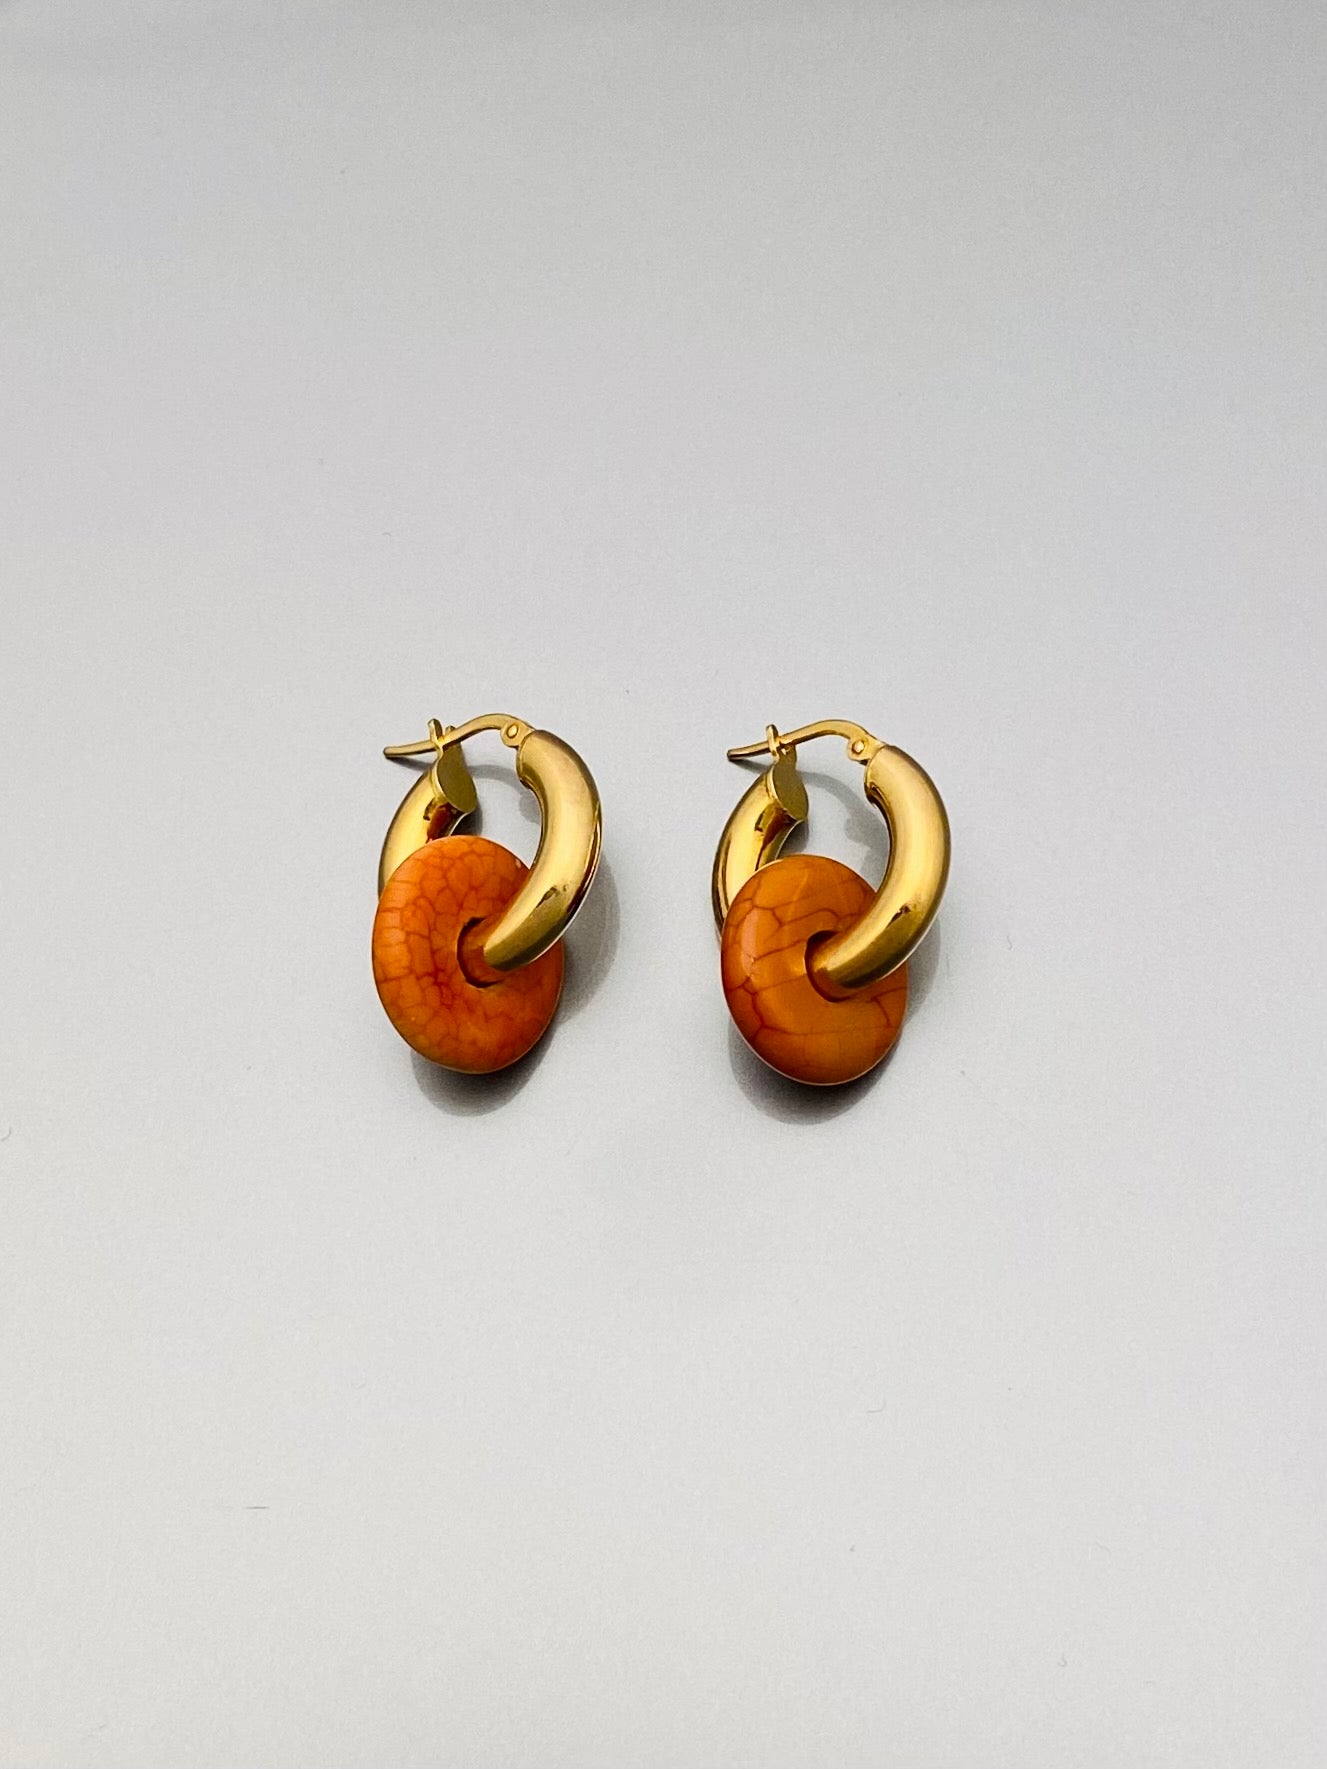 Jaspis earrings